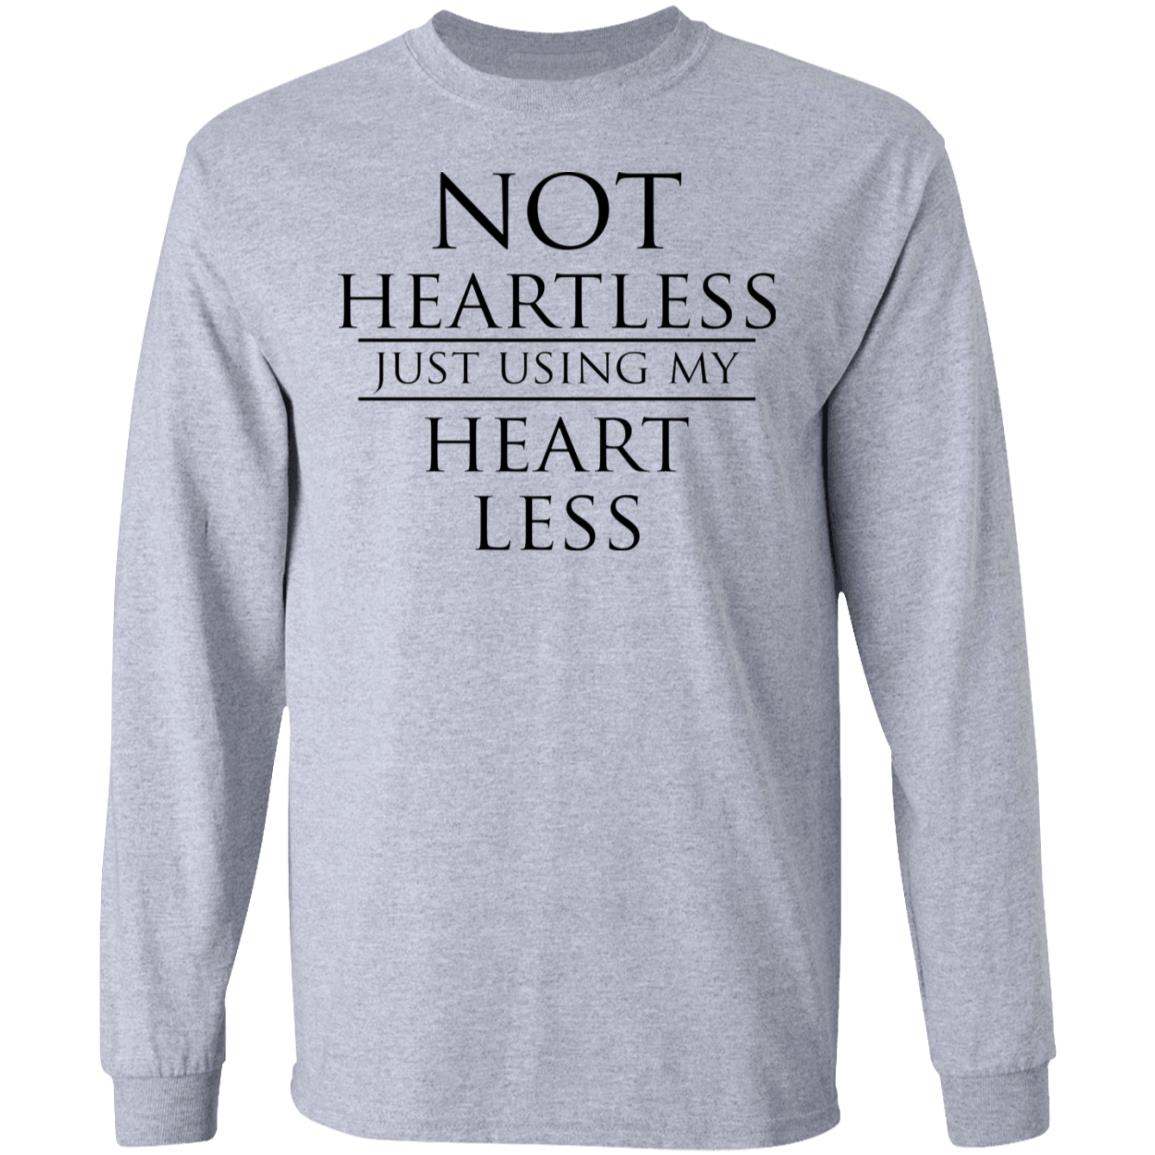 Not heartless just using my heart less shirt, hoodie